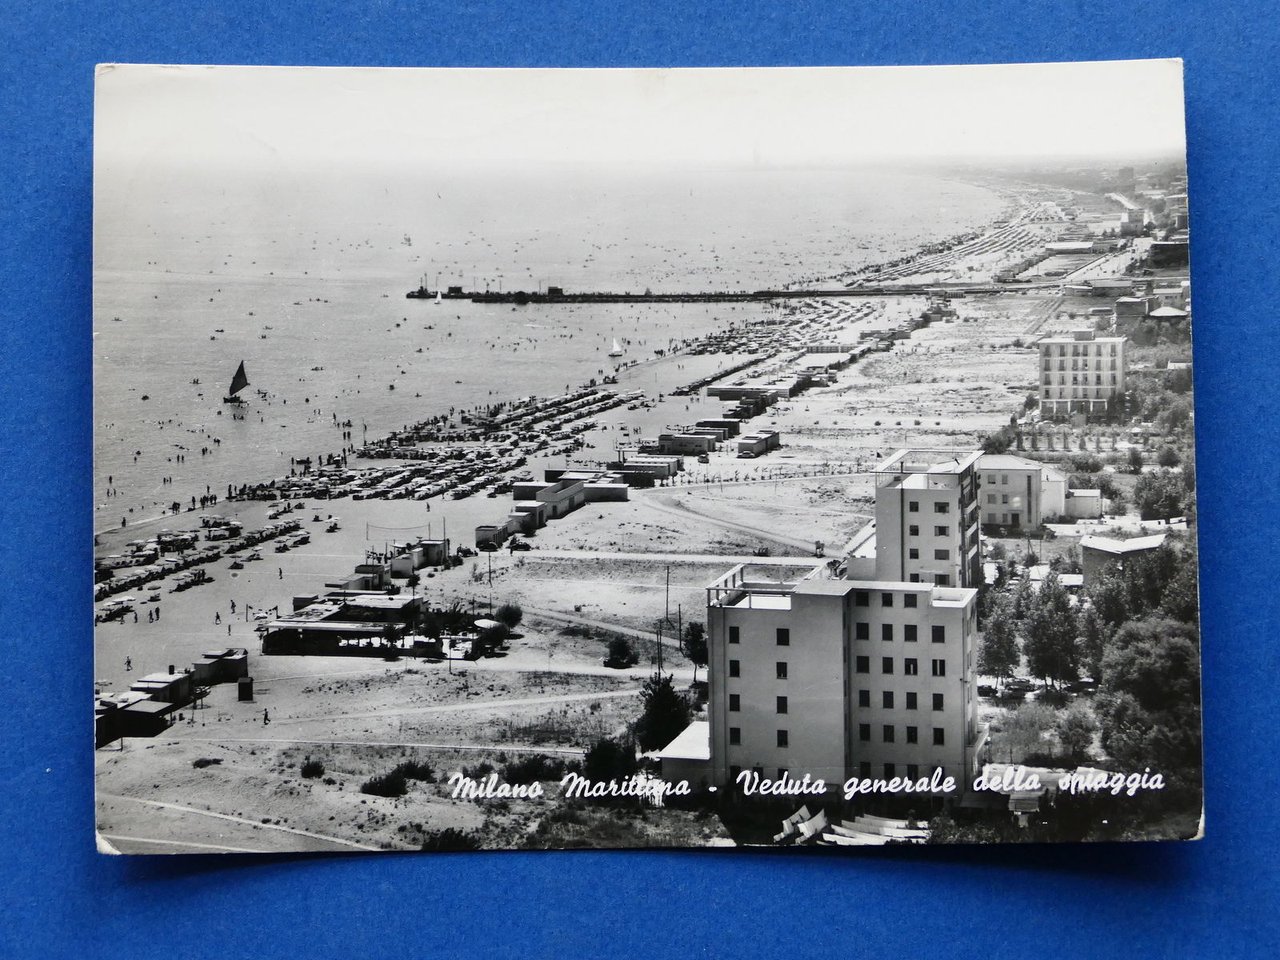 Cartolina Milano Marittima - Veduta generale della spiaggia - 1959.